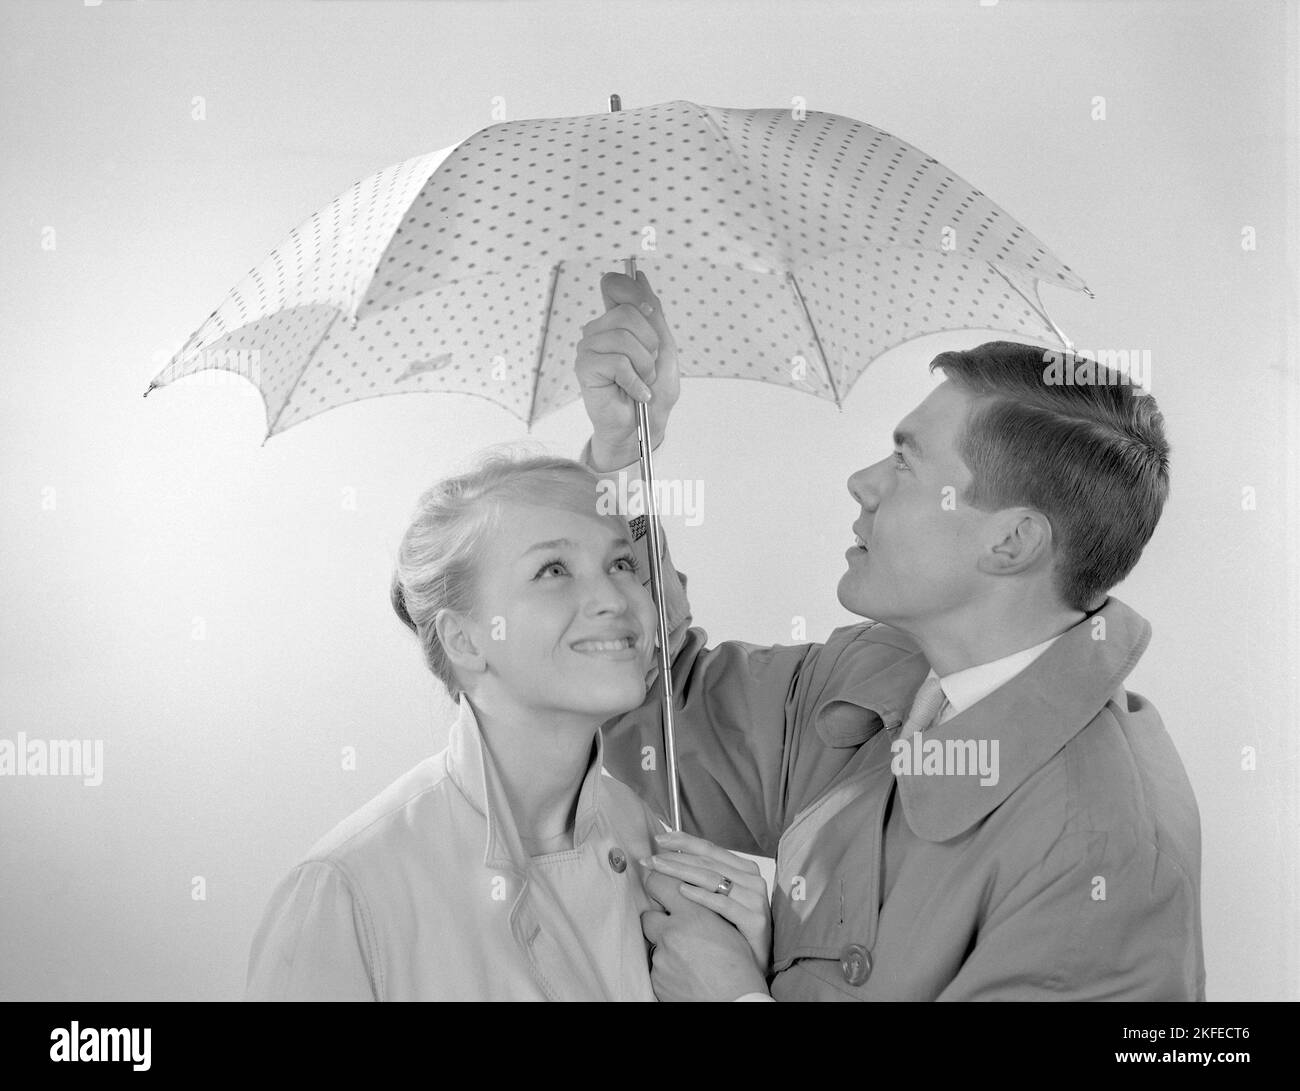 1960s couple. Un couple souriant se tient sous un parapluie. Suède 1960 Conard réf. 4254 Banque D'Images